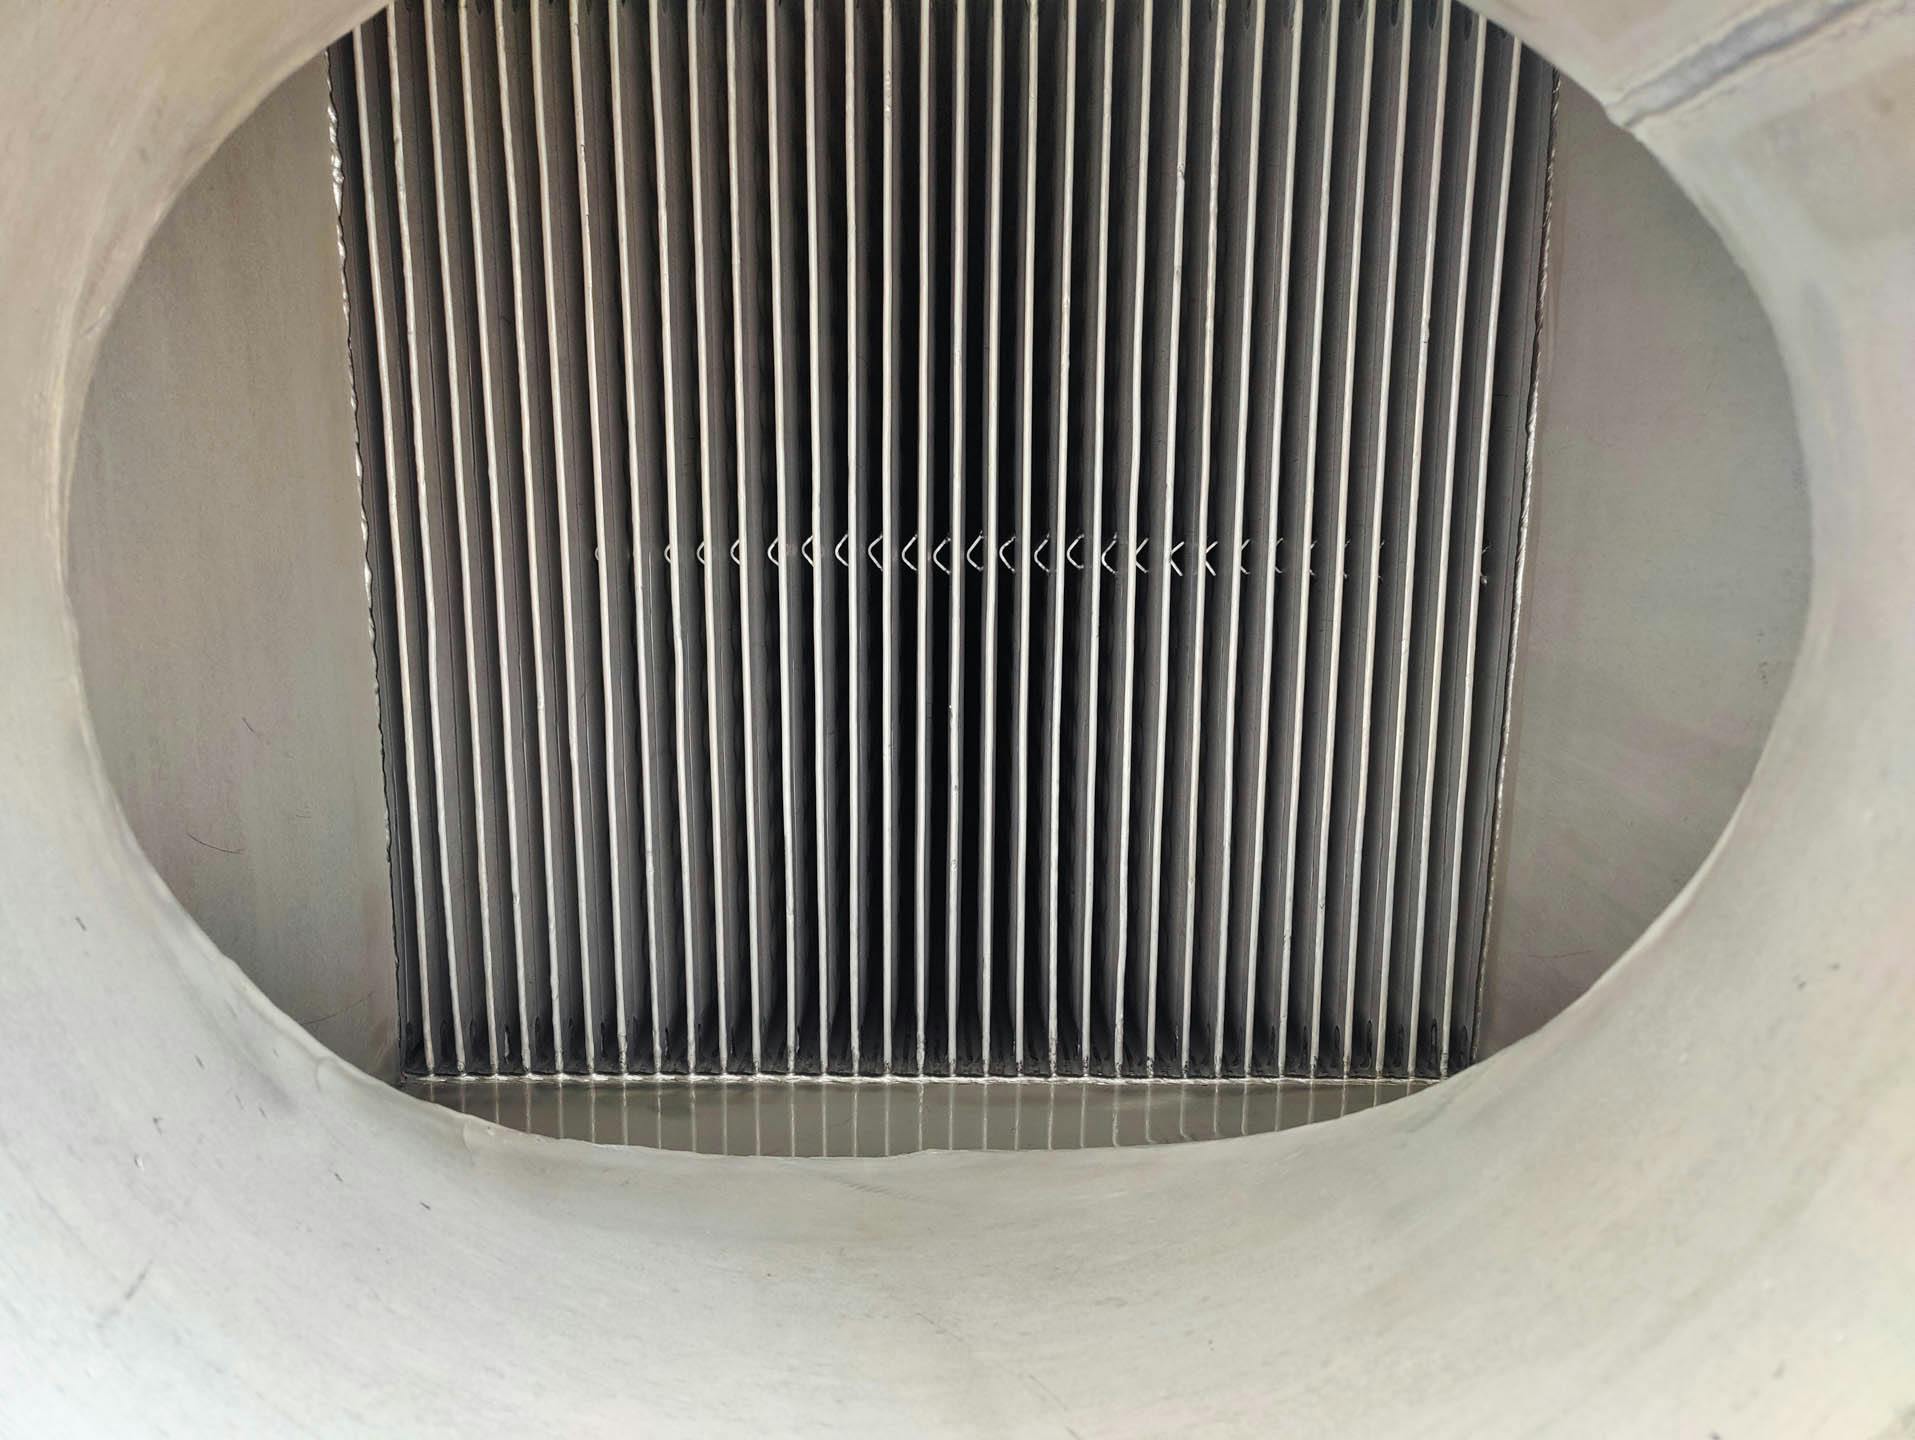 Barriquand DIXS 34+33/2x33x4000x580 welded plate heat exchanger - Platen warmtewisselaar - image 5